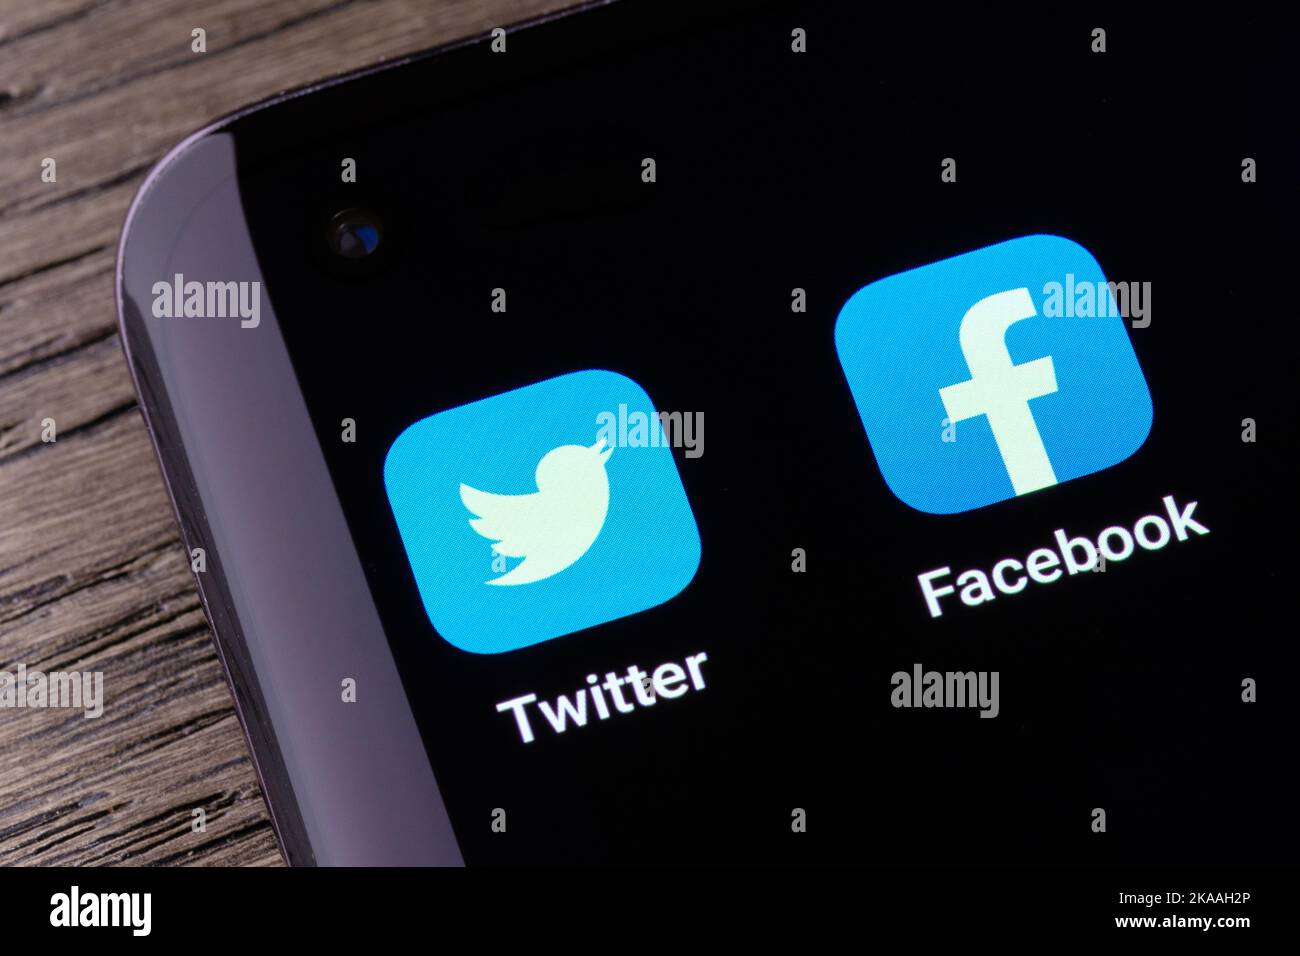 Applications de réseaux sociaux Twitter et Facebook affichées sur l'écran du smartphone. Concept de la concurrence. Stafford, Royaume-Uni, 30 octobre 2022 Banque D'Images